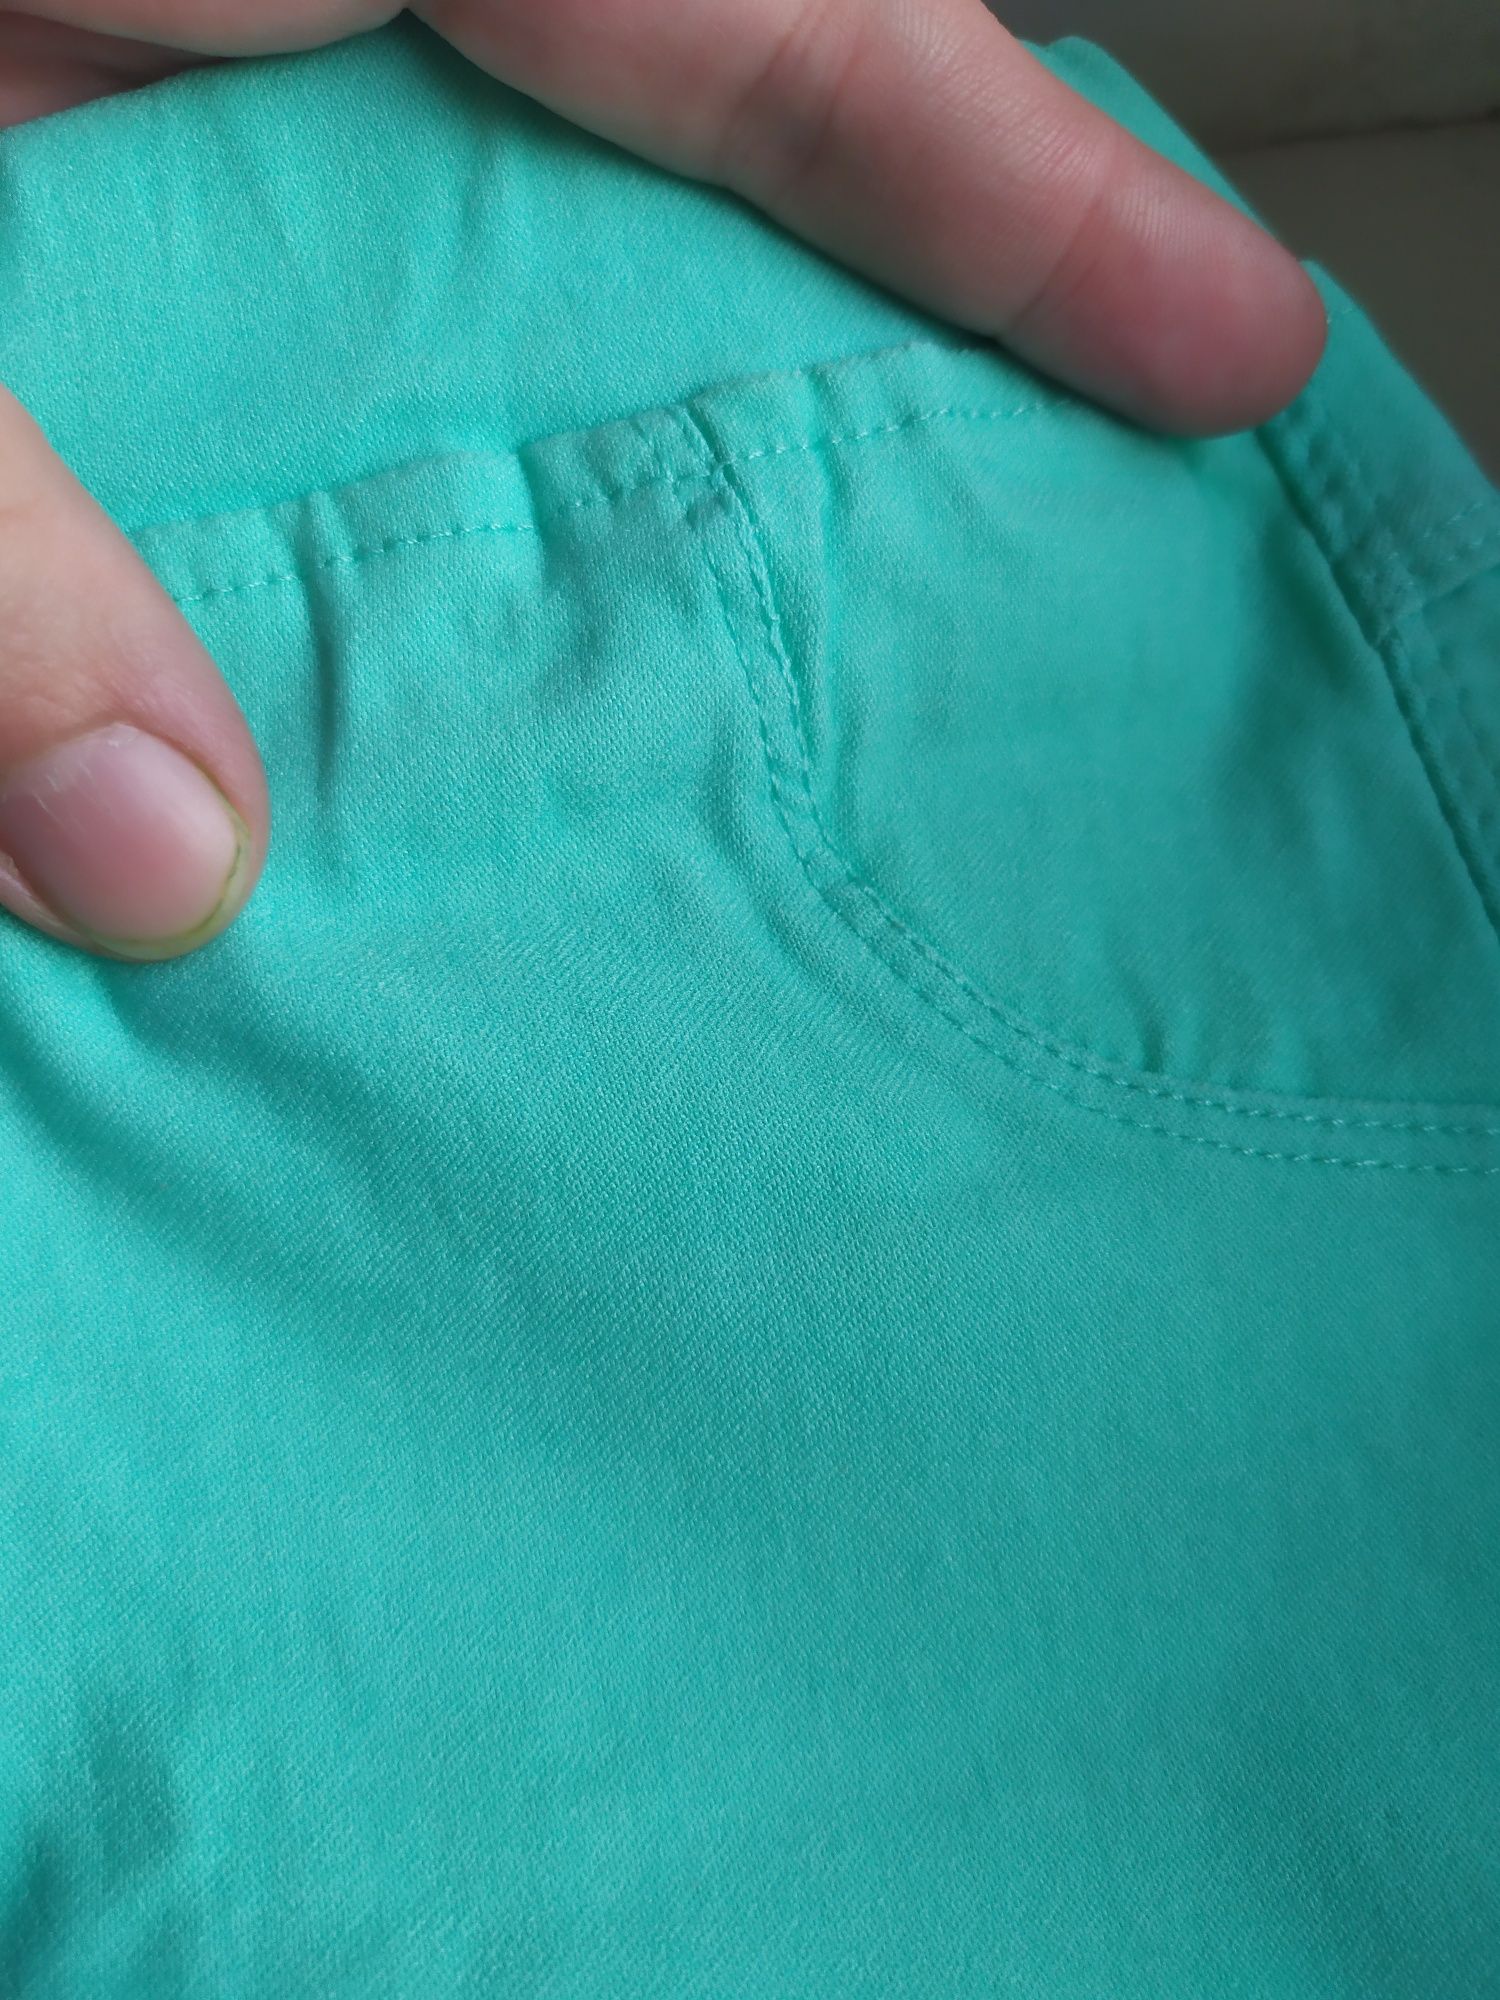 Джегінси 116-122 на 5-6 років джинси штани лосини легінси